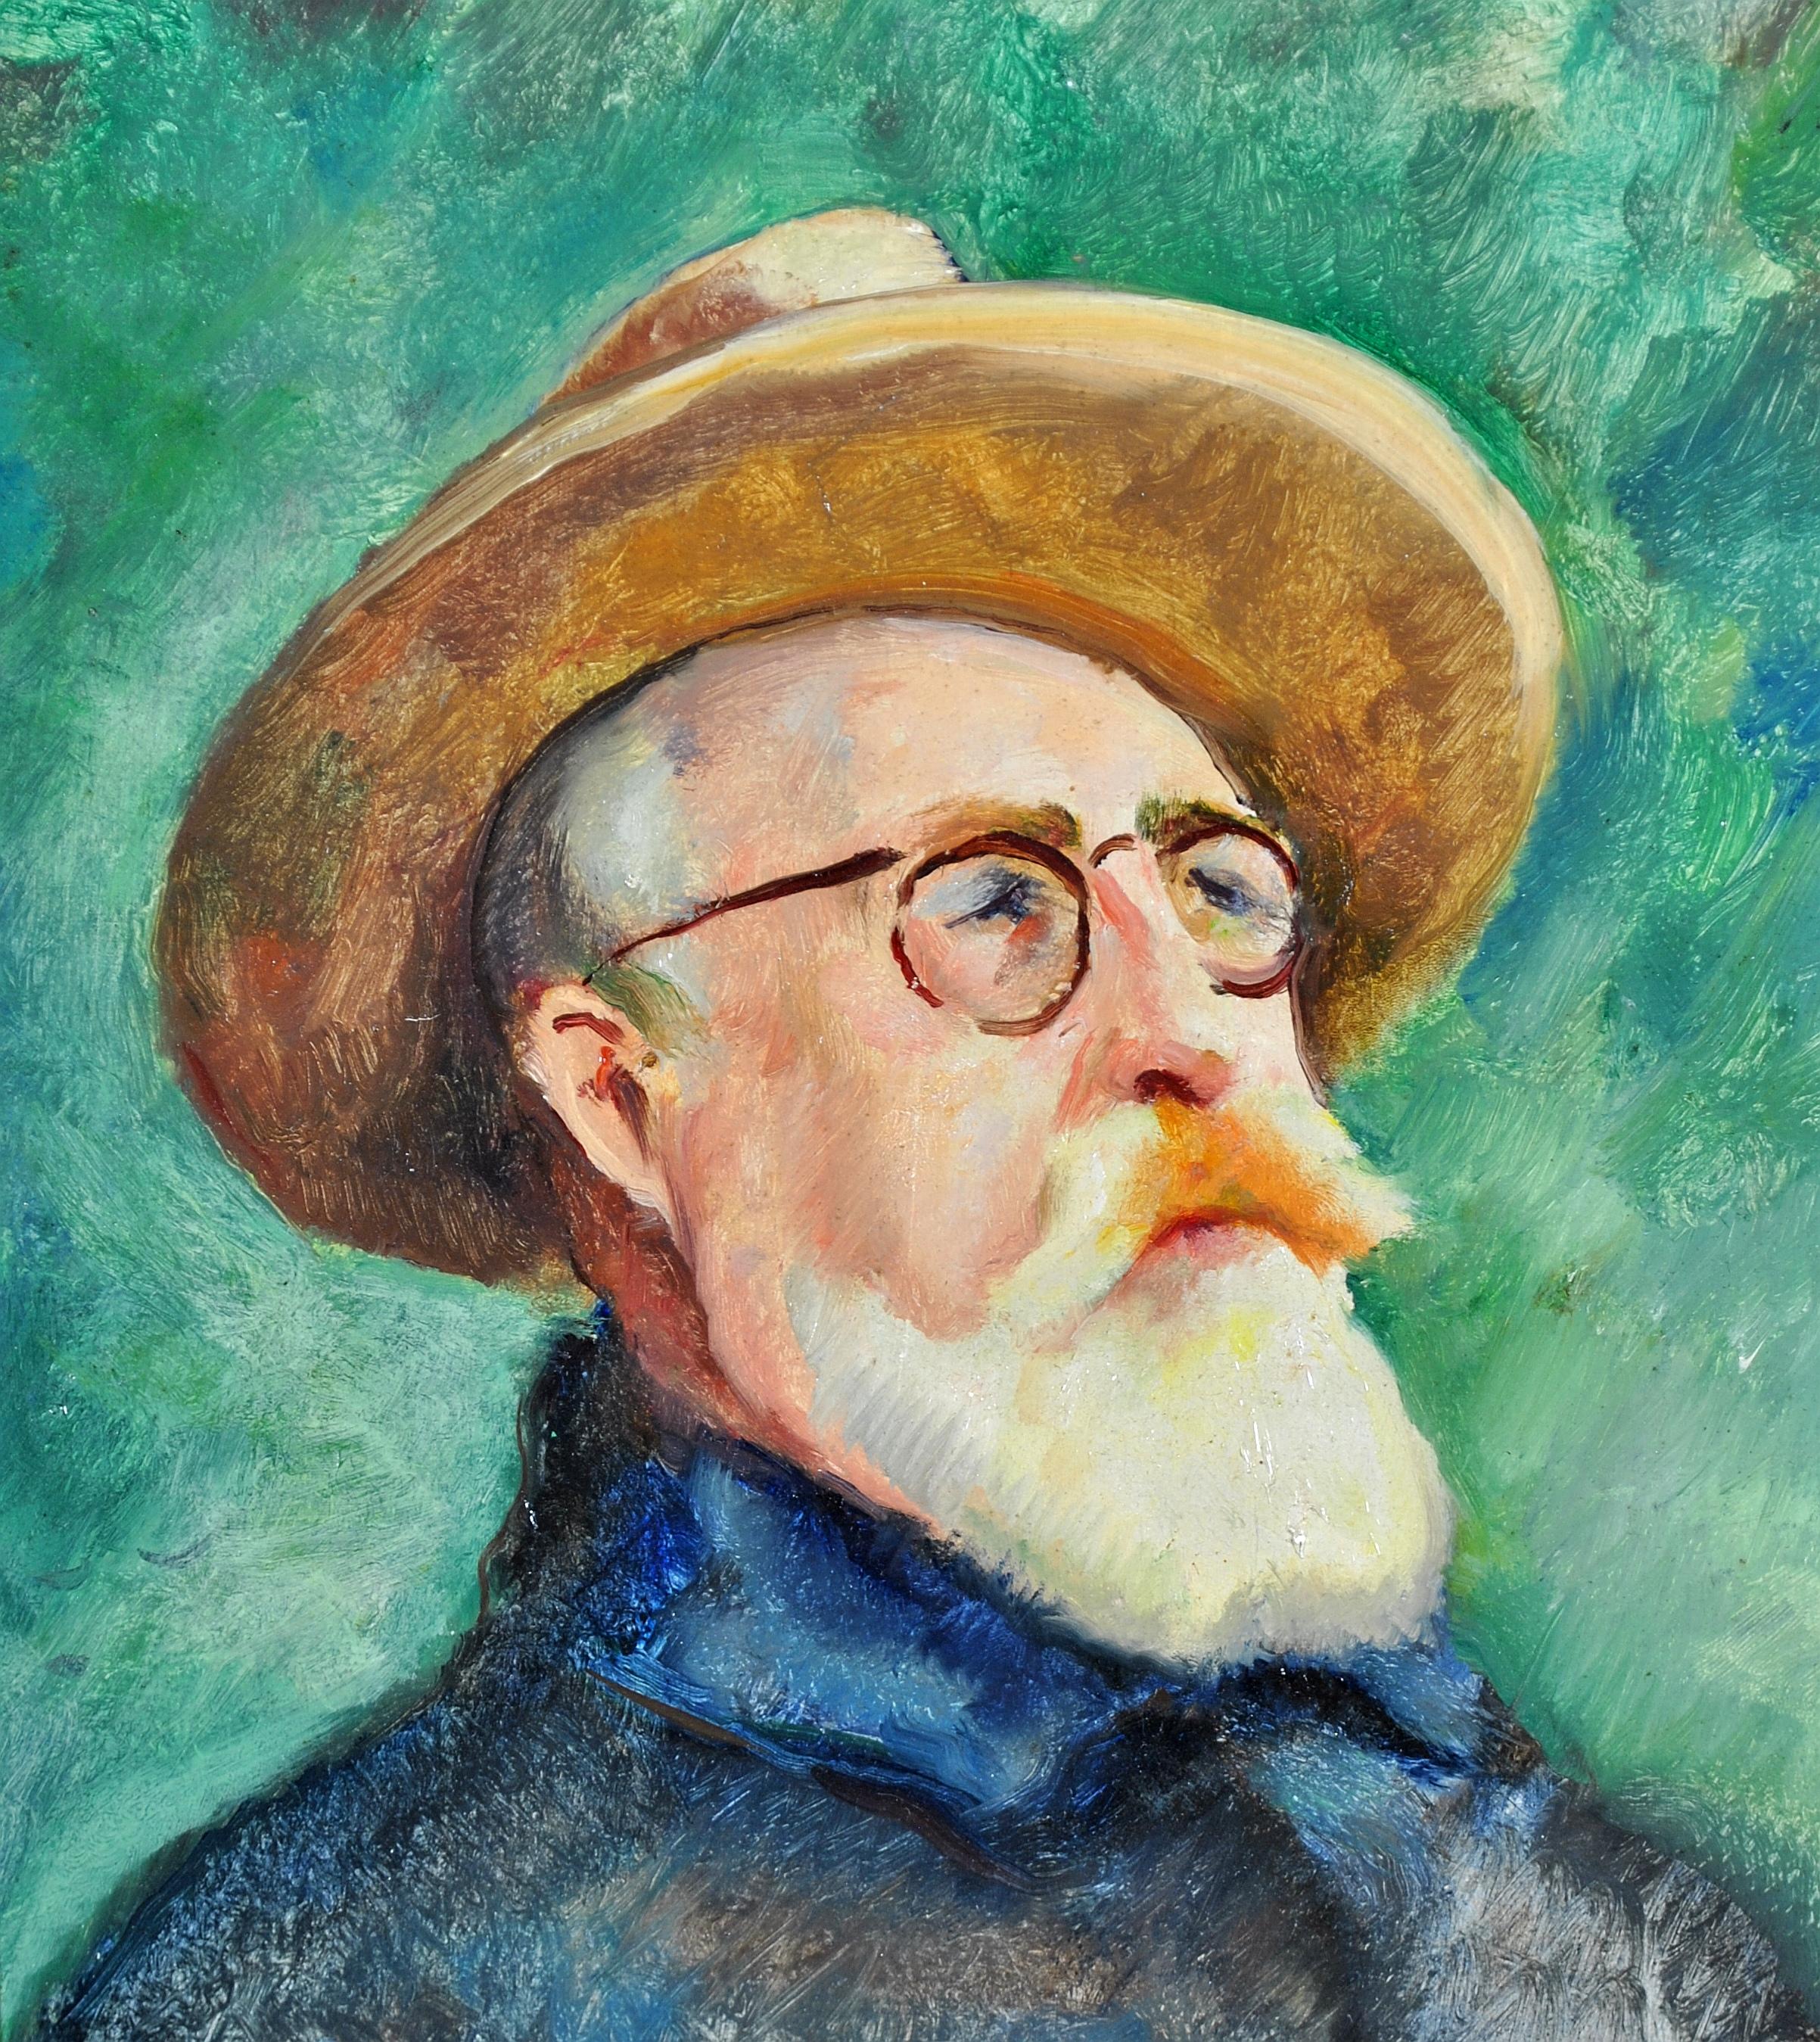 Self Portrait - Peinture impressionniste française du milieu du 20e siècle - Huile sur panneau - Impressionnisme Painting par Charles Picart le Doux